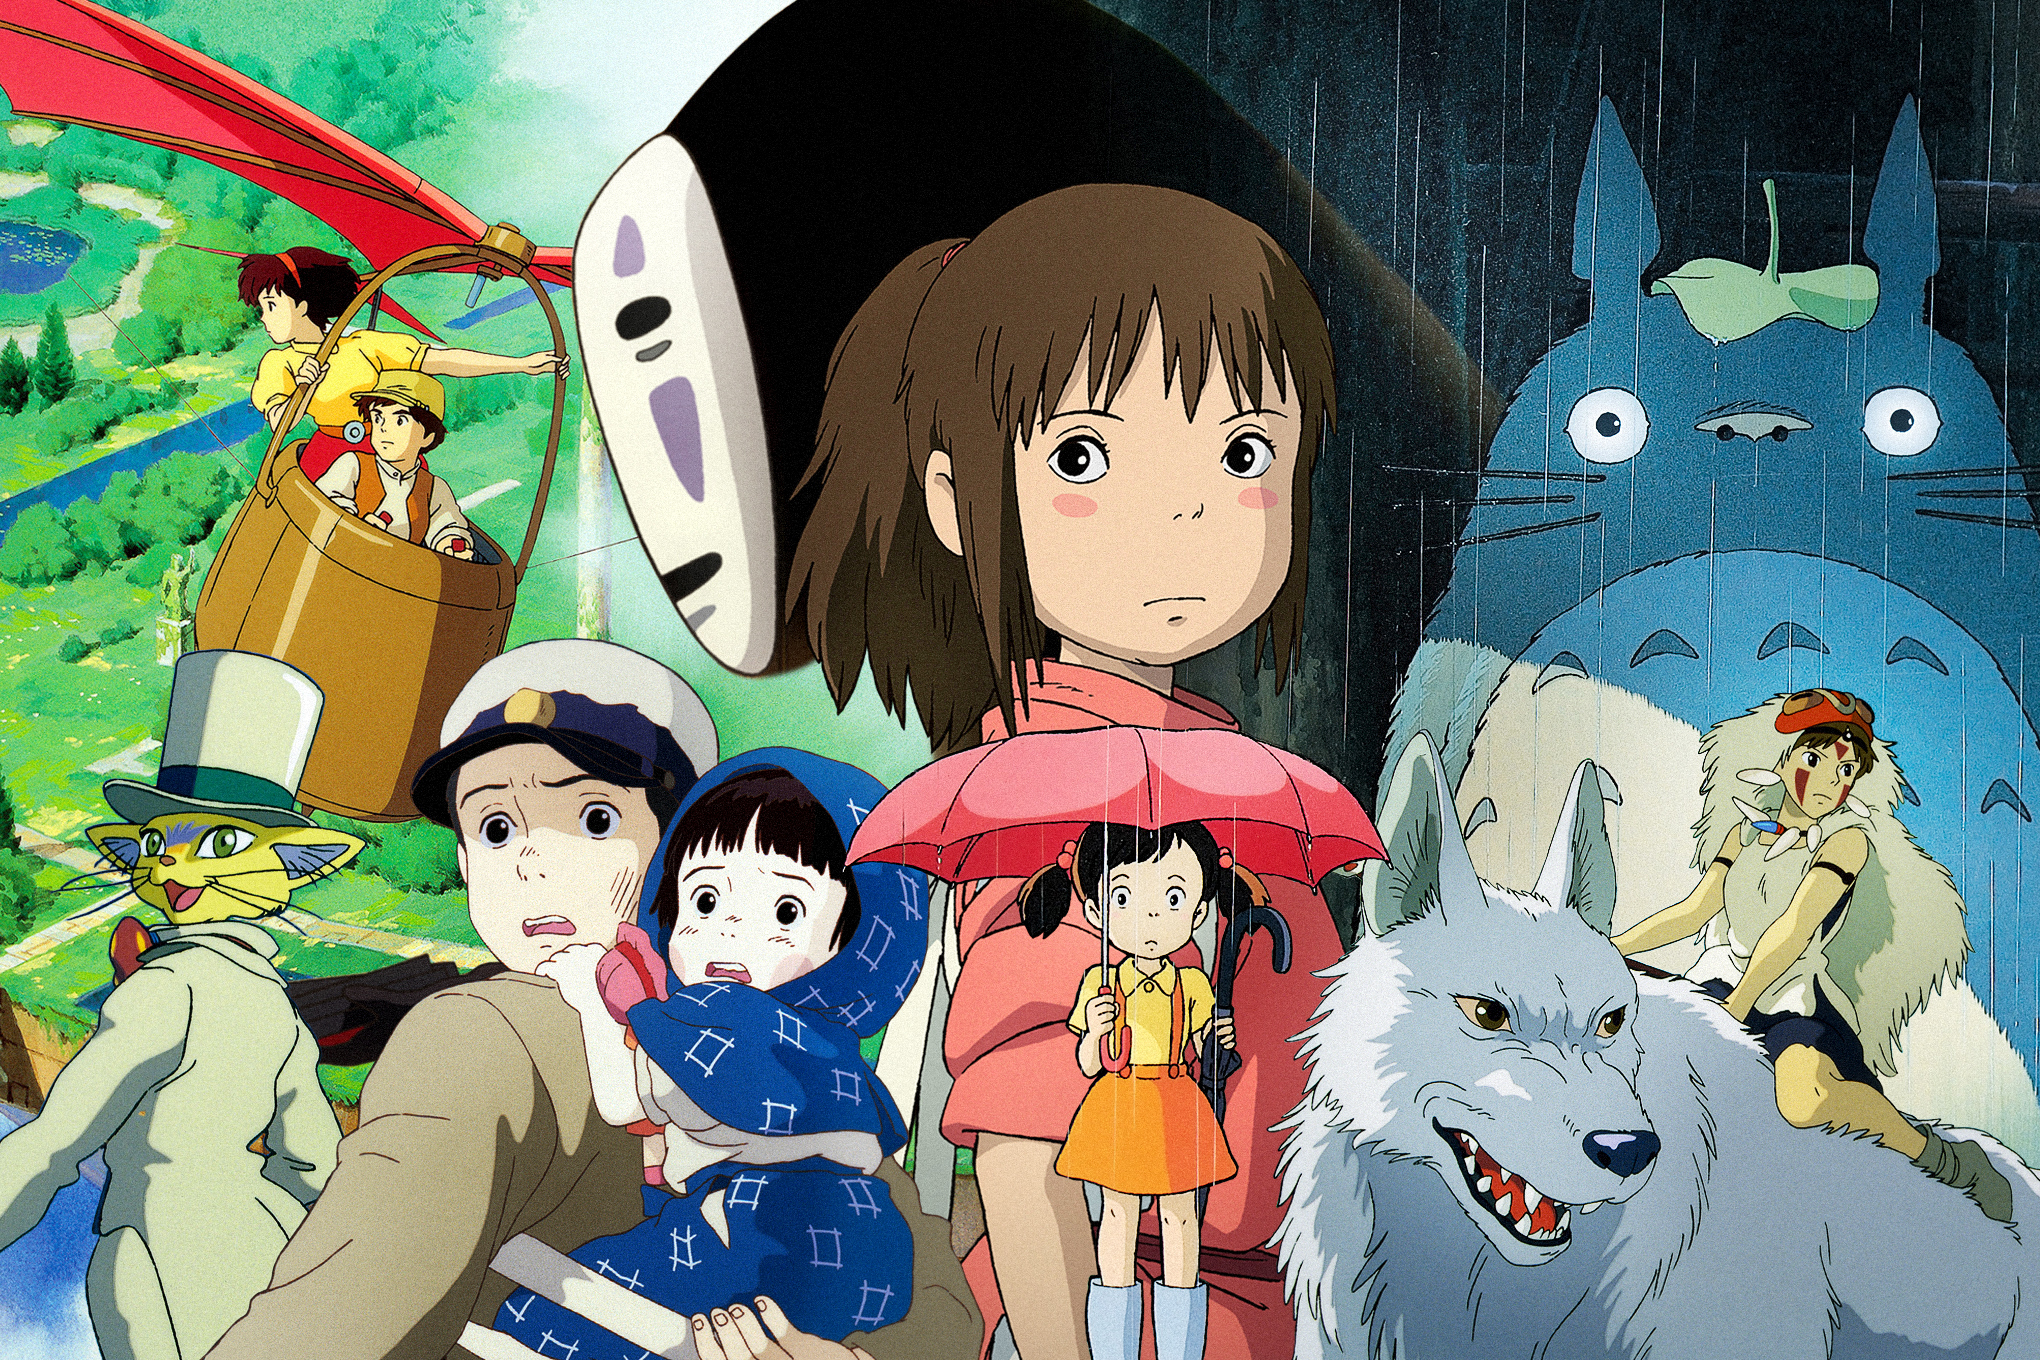 O Festival de Cinema de Cannes vai premiar a lendária casa de animação japonesa Studio Ghibli com sua Palma de Ouro honorária este ano, a primeira vez que Cannes concedeu seu maior prêmio a uma empresa em vez de um indivíduo.